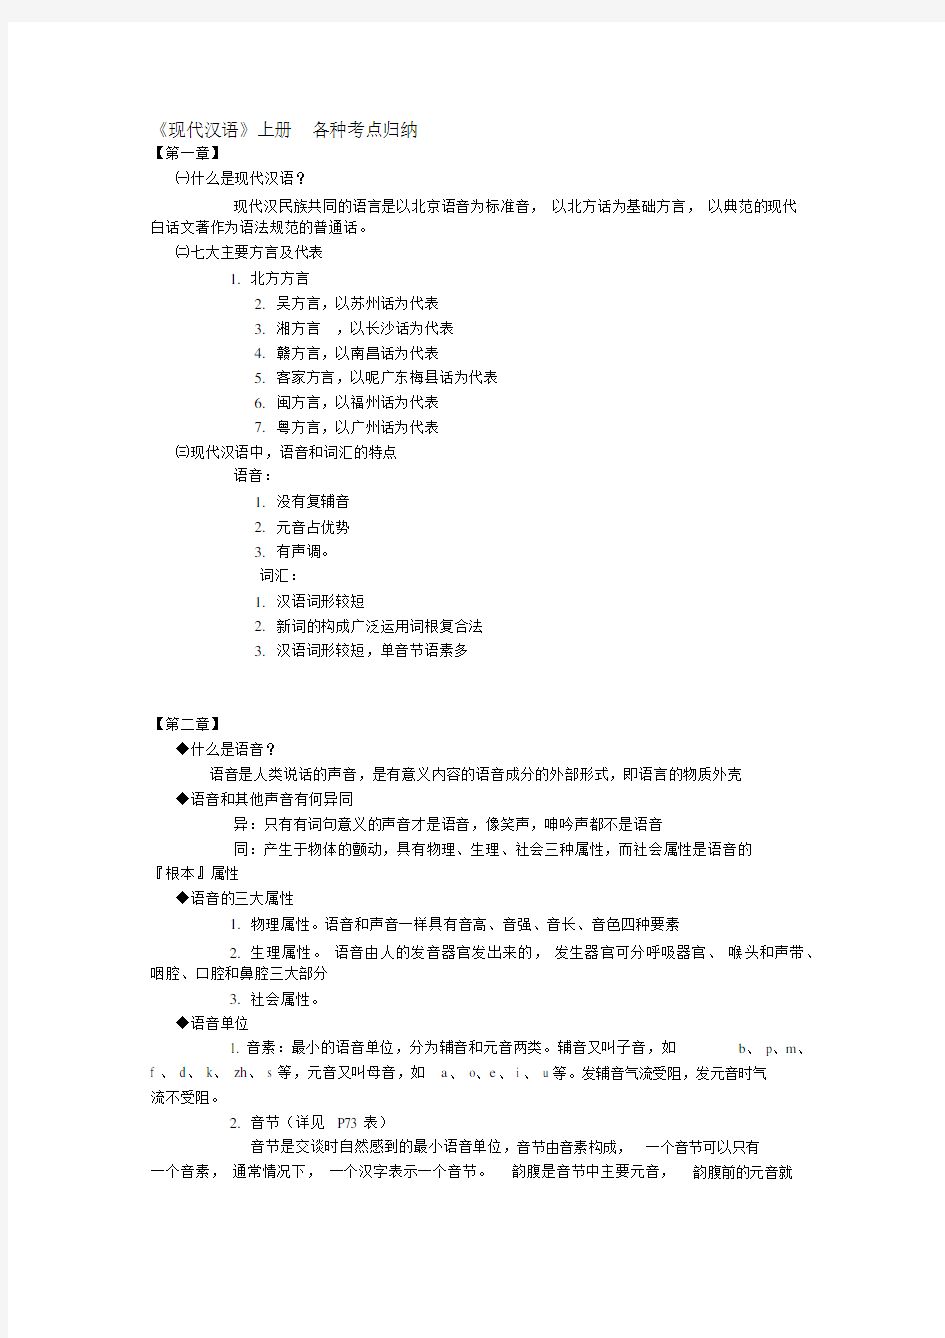 《现代汉语》上册各种考点归纳(20210109090616)